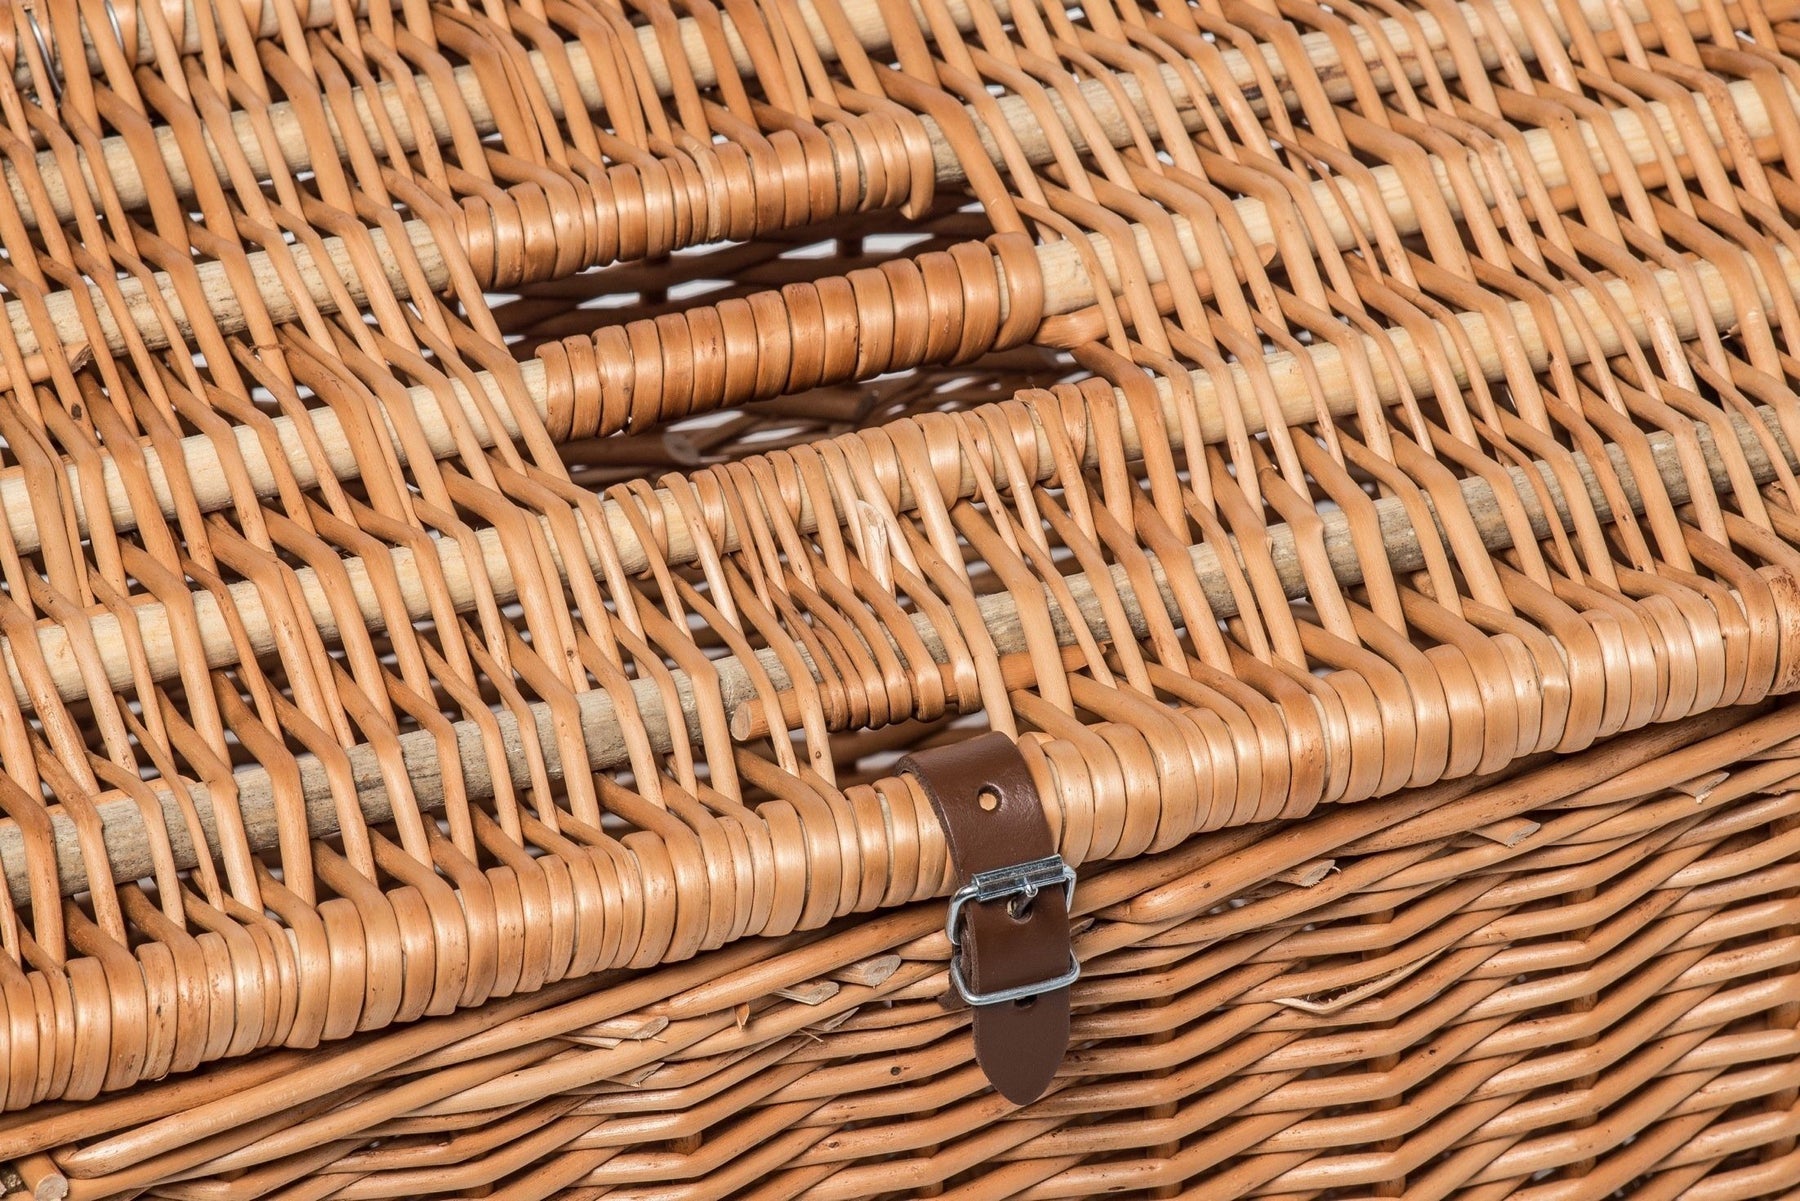 Traditional Wicker Fishing Basket – Prestige Wicker